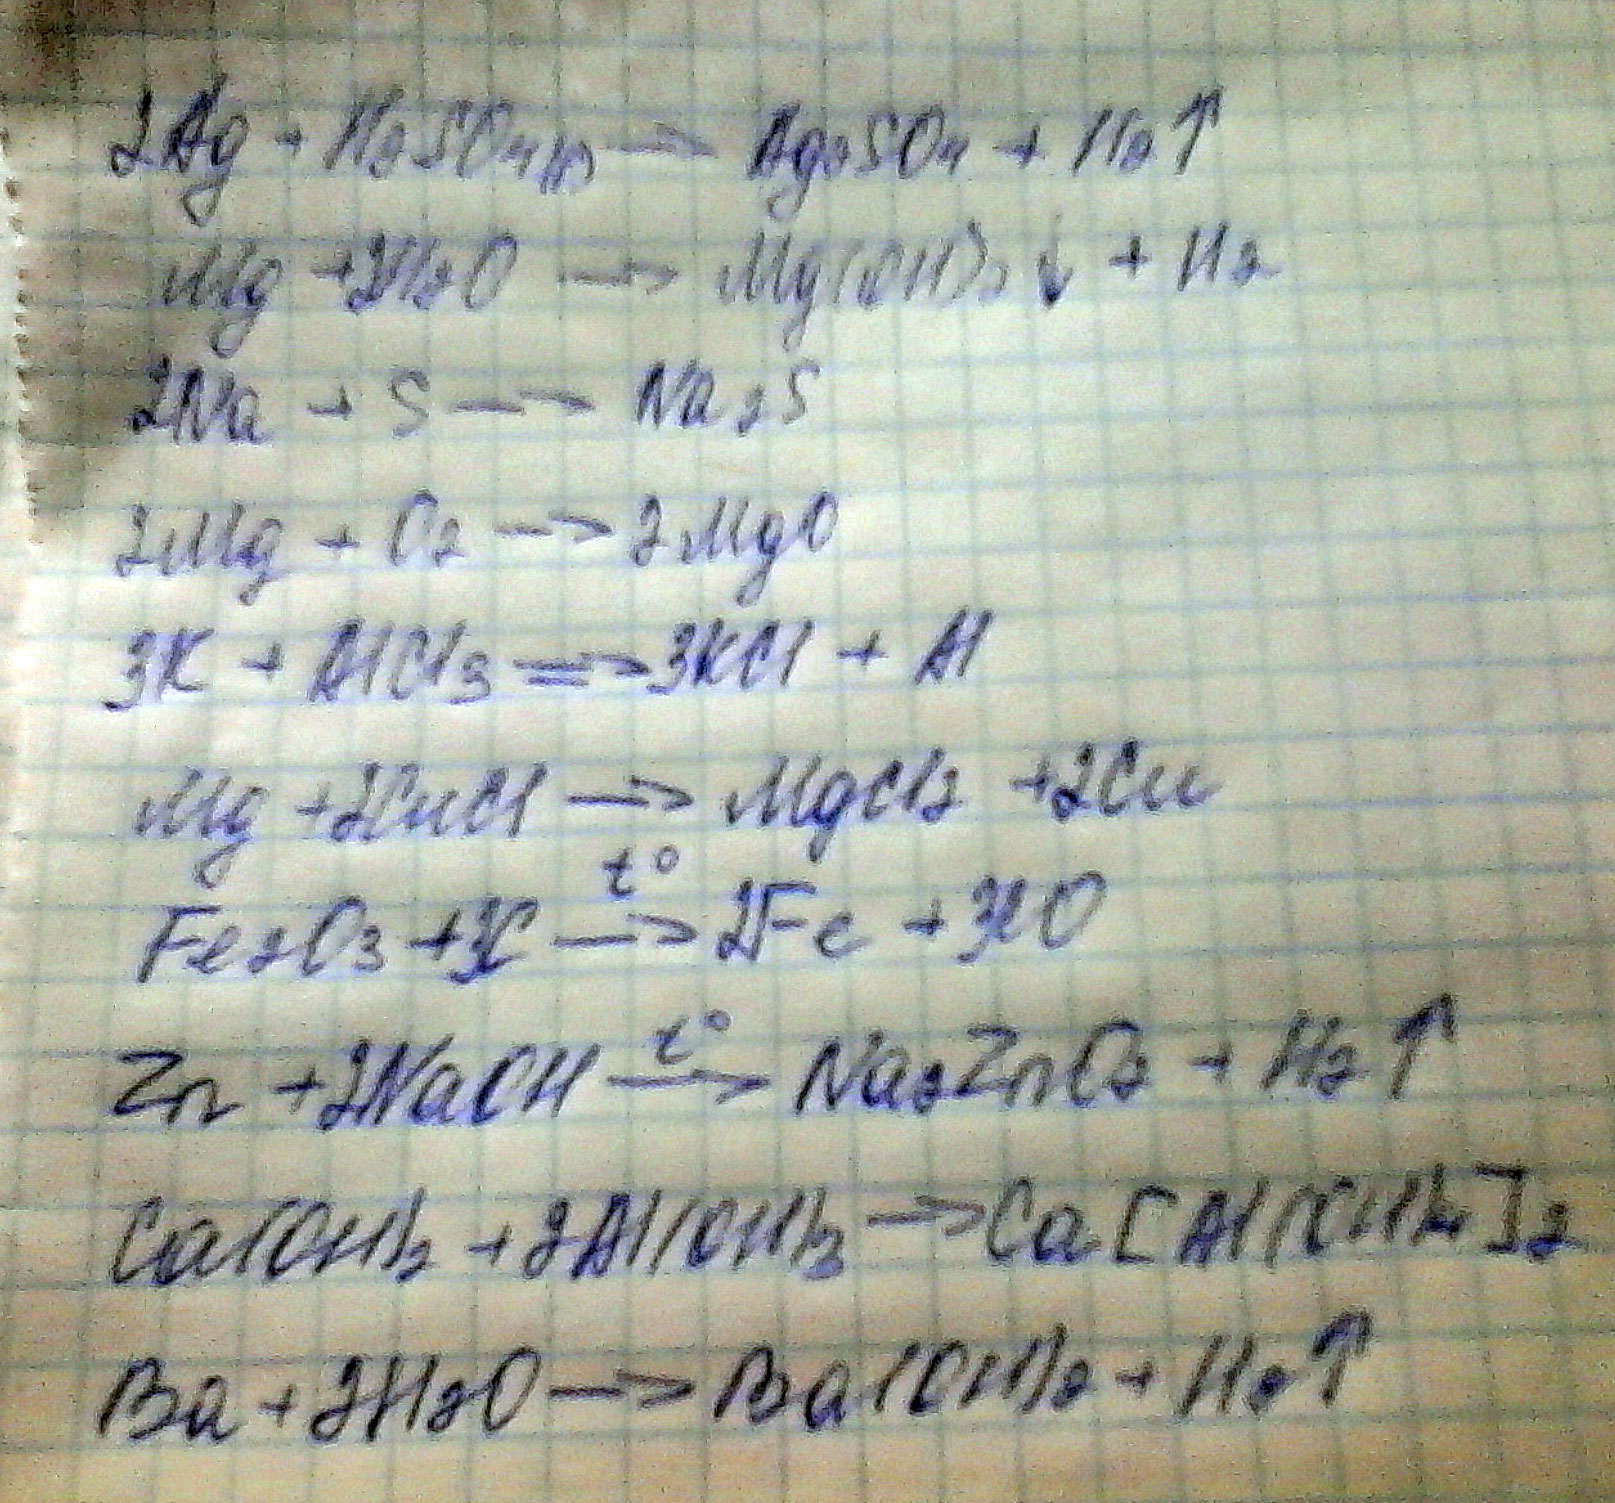 Закончить уравнения возможных реакций:1. Ag+ H2SO4(разб →2. Mg+ H2O→3. Na+S→4. Mg+ O2→5. K+AICI3→6. Mg+CuCI2→7. Fe2O3+C→8. Zn+NaOH→9. AL+Ca(OH)2→10. Ba+ H2O→